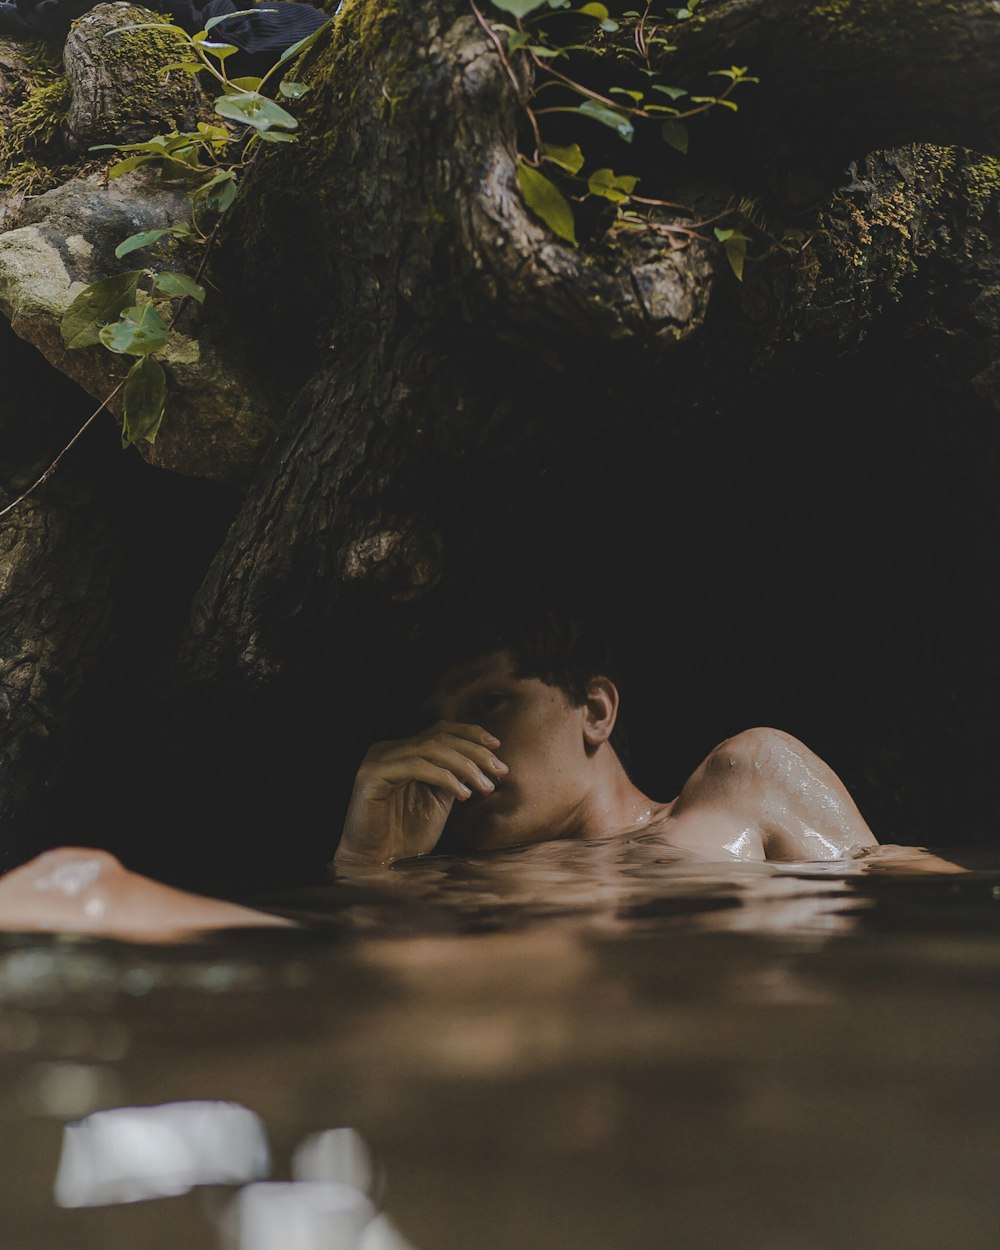 Un homme allongé dans l’eau à côté d’un arbre